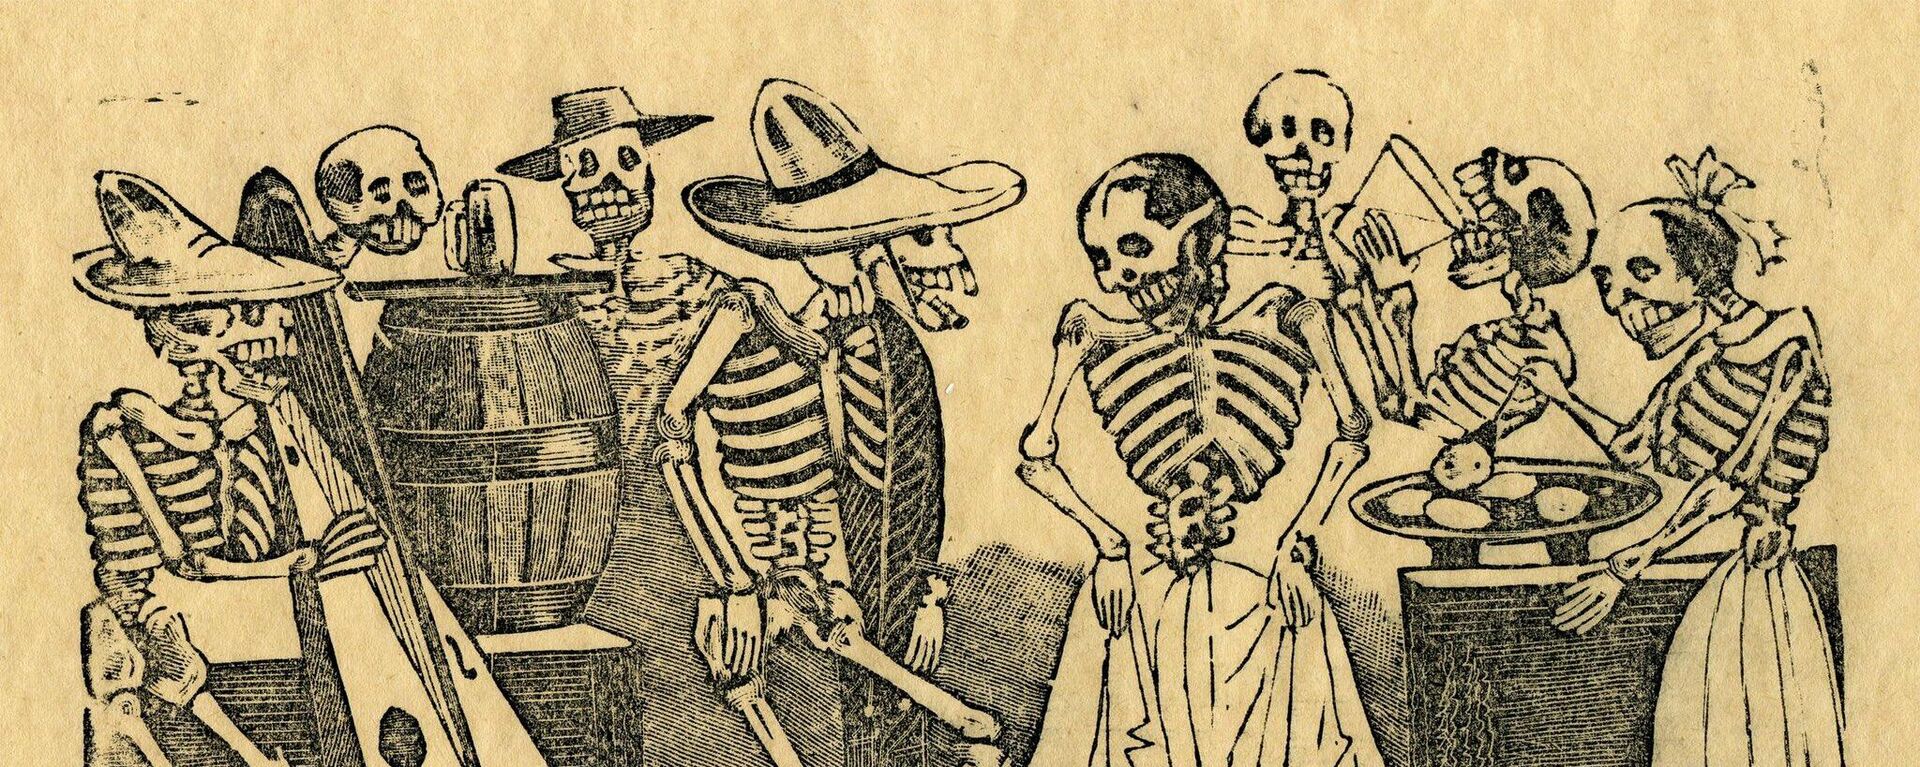 Grabado de José Guadalupe Posada, artista mexicano. - Sputnik Mundo, 1920, 02.11.2021